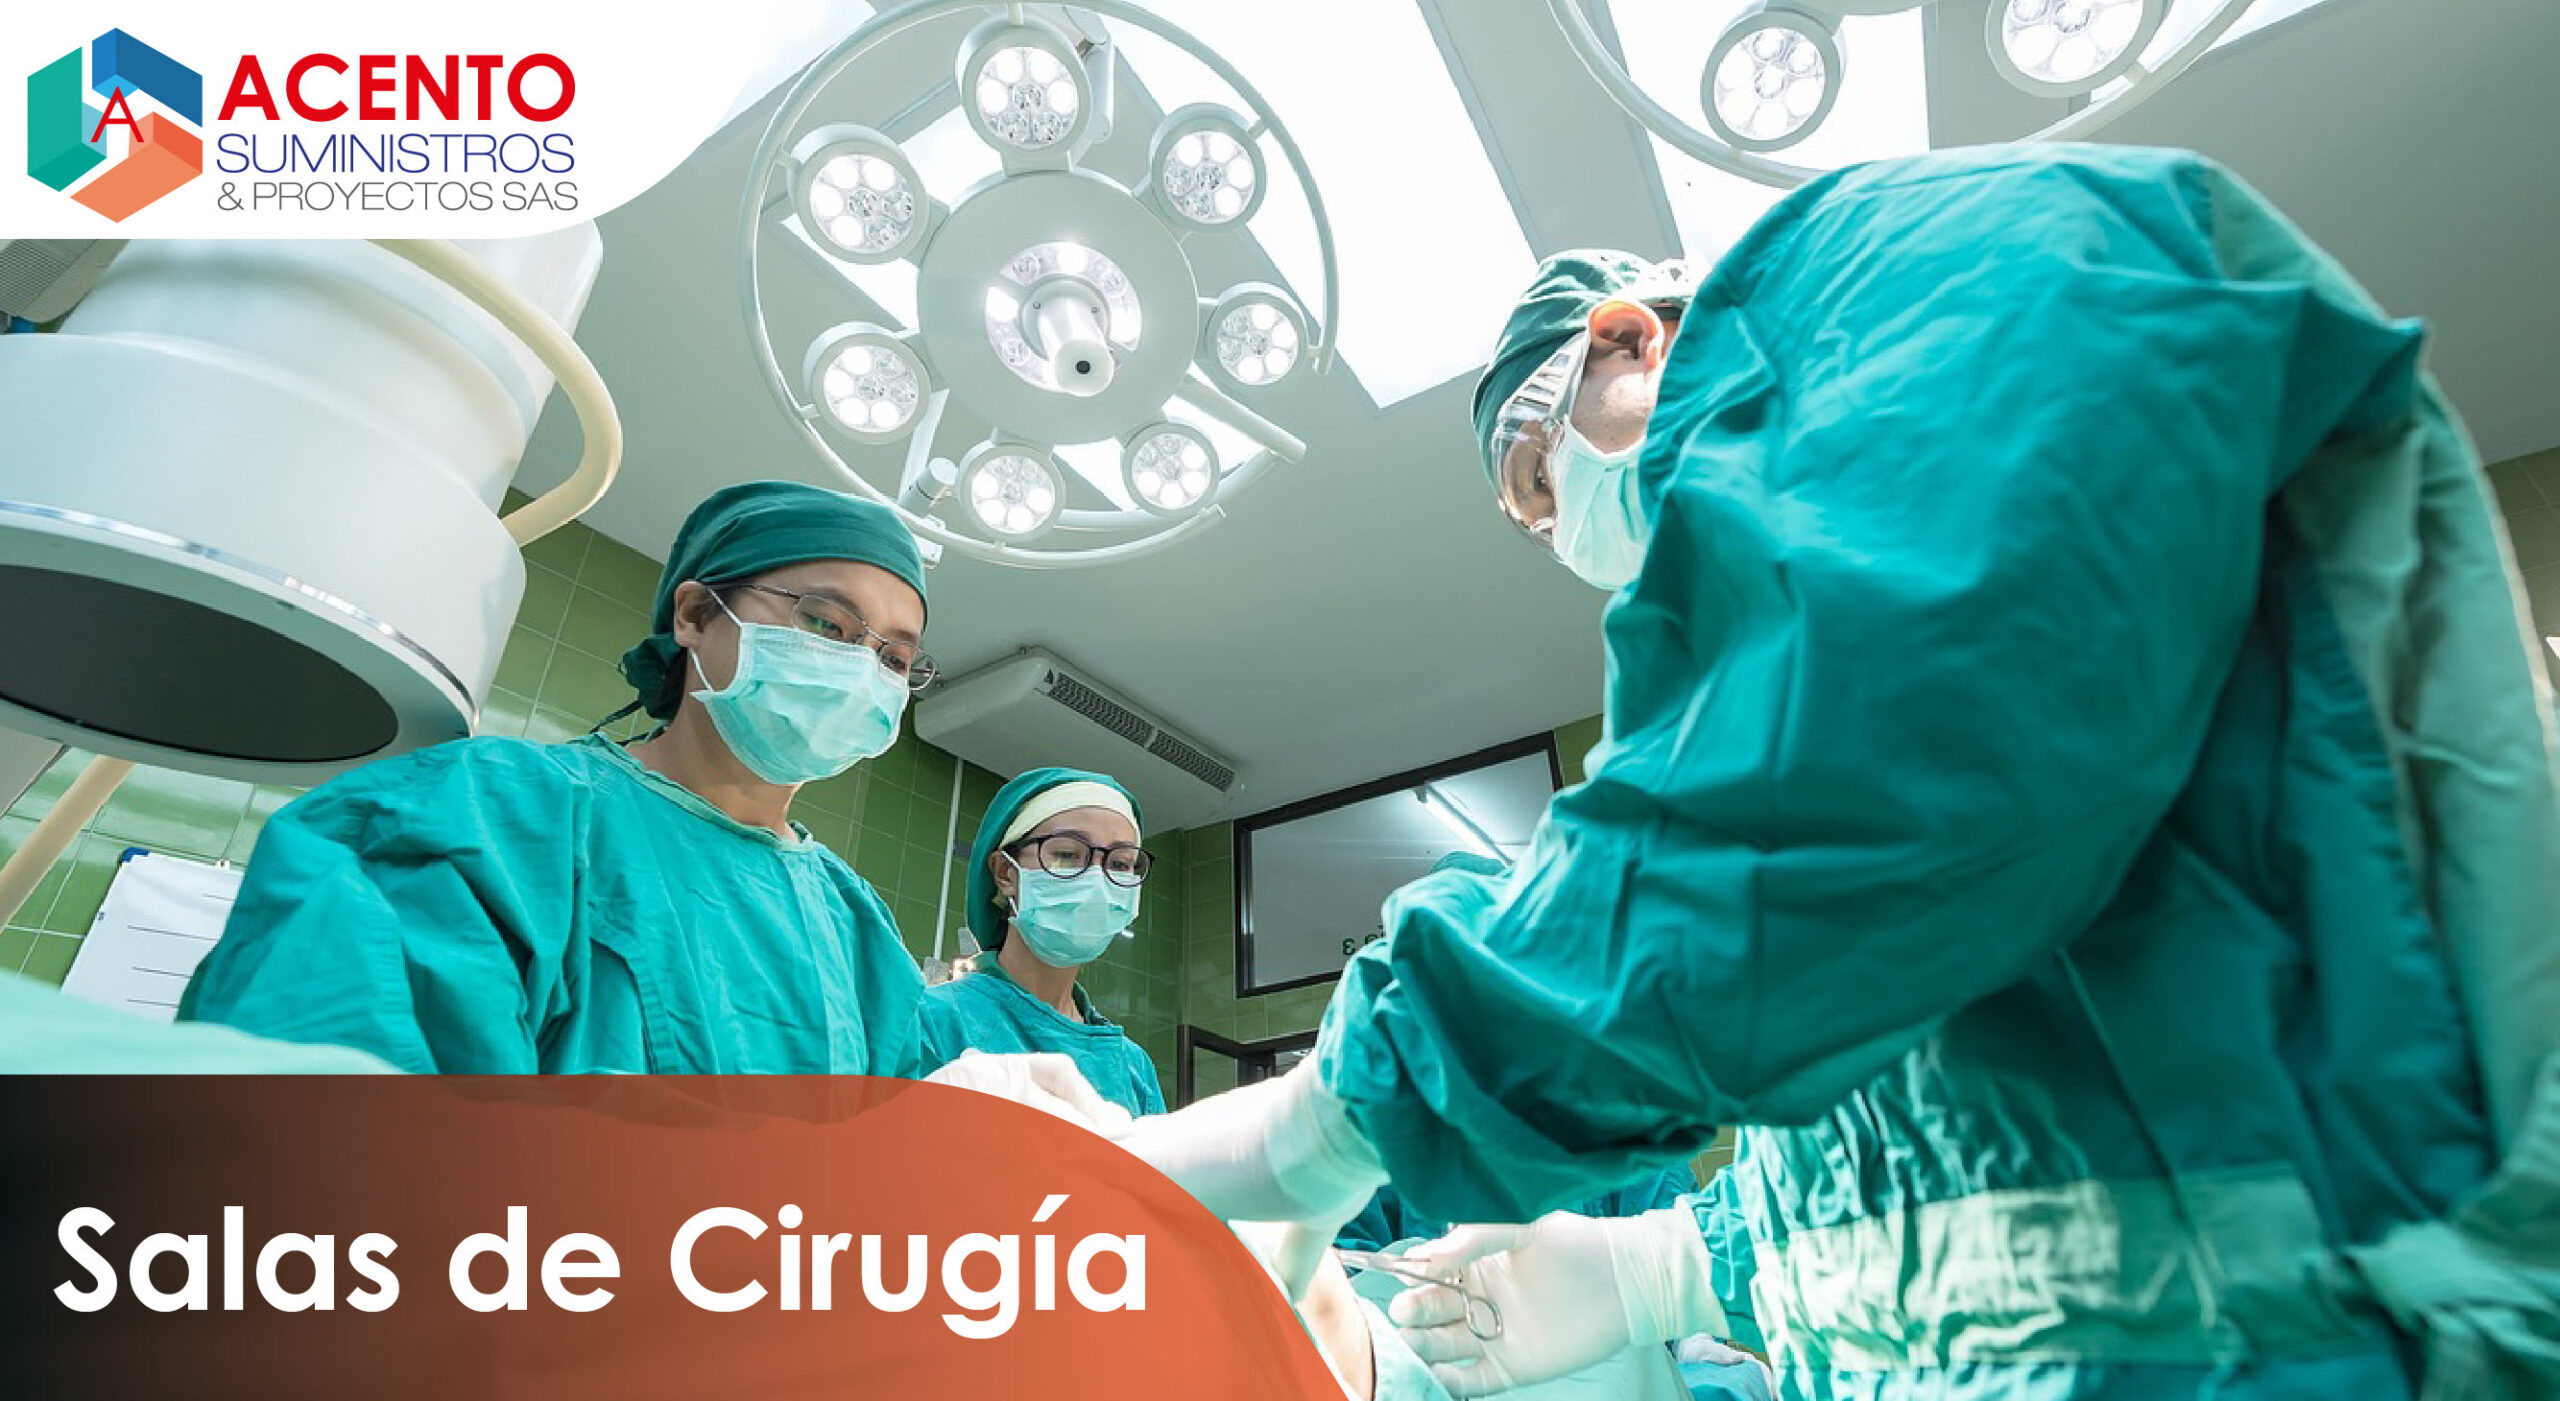 Suministros e instalacion de pisos y complementos en salas de cirugia con la mejor calidad en Colombia en Acento Suministros